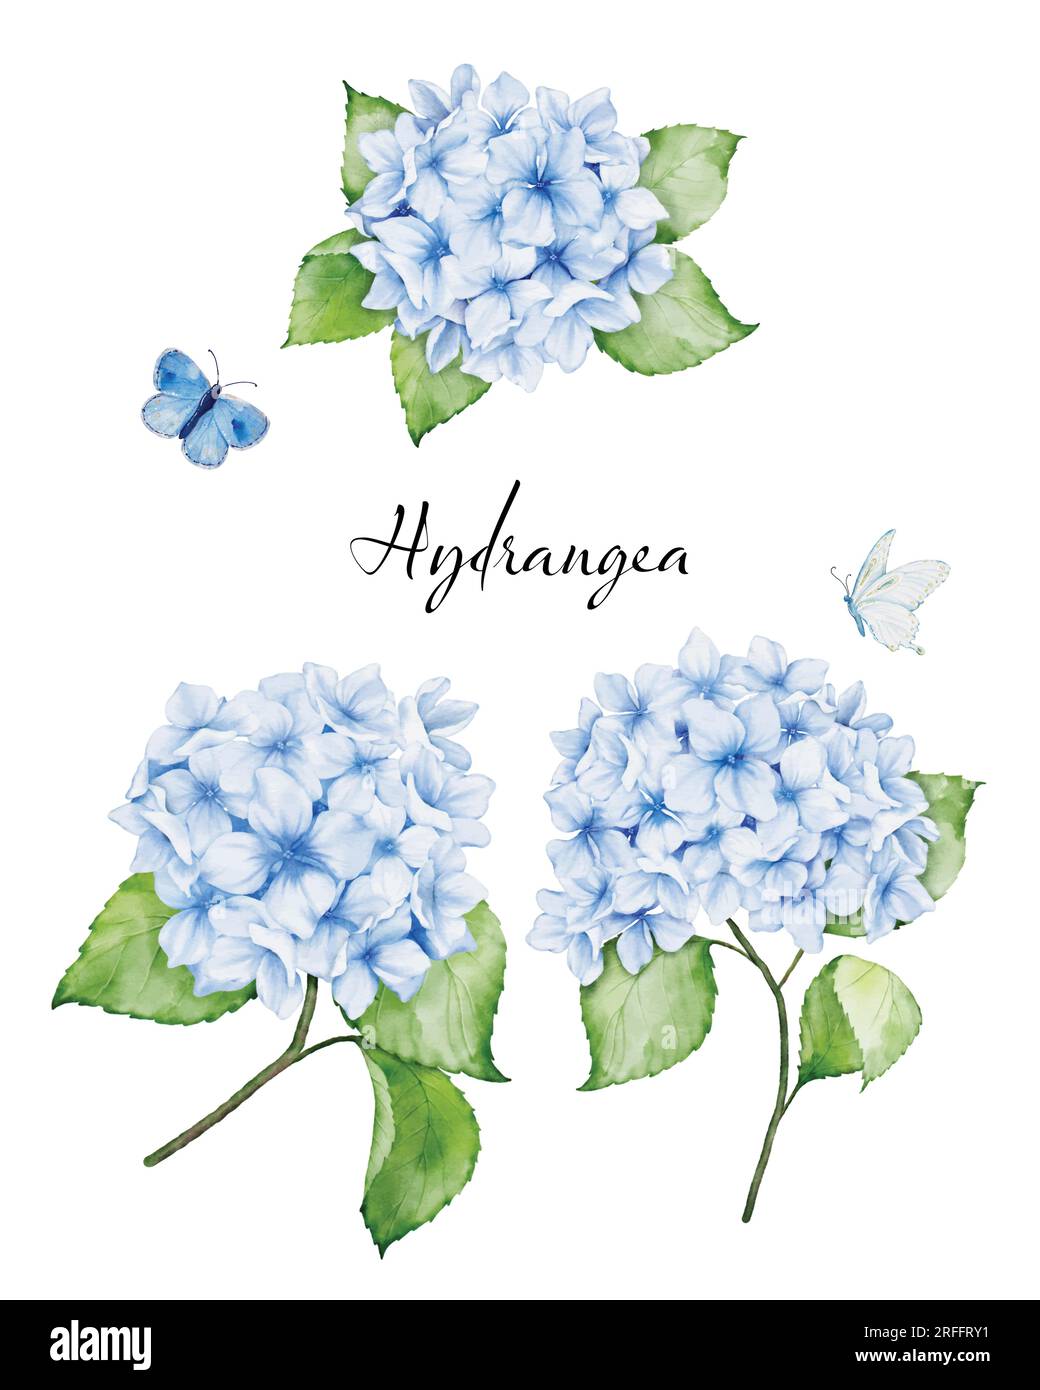 Set aus wunderschönen wässrigen Blumensträußen mit blauen Hortensien, Ästen, Blättern und Schmetterlingen, Aquarellgemälde. Vektor isoliert auf WHI Stock Vektor